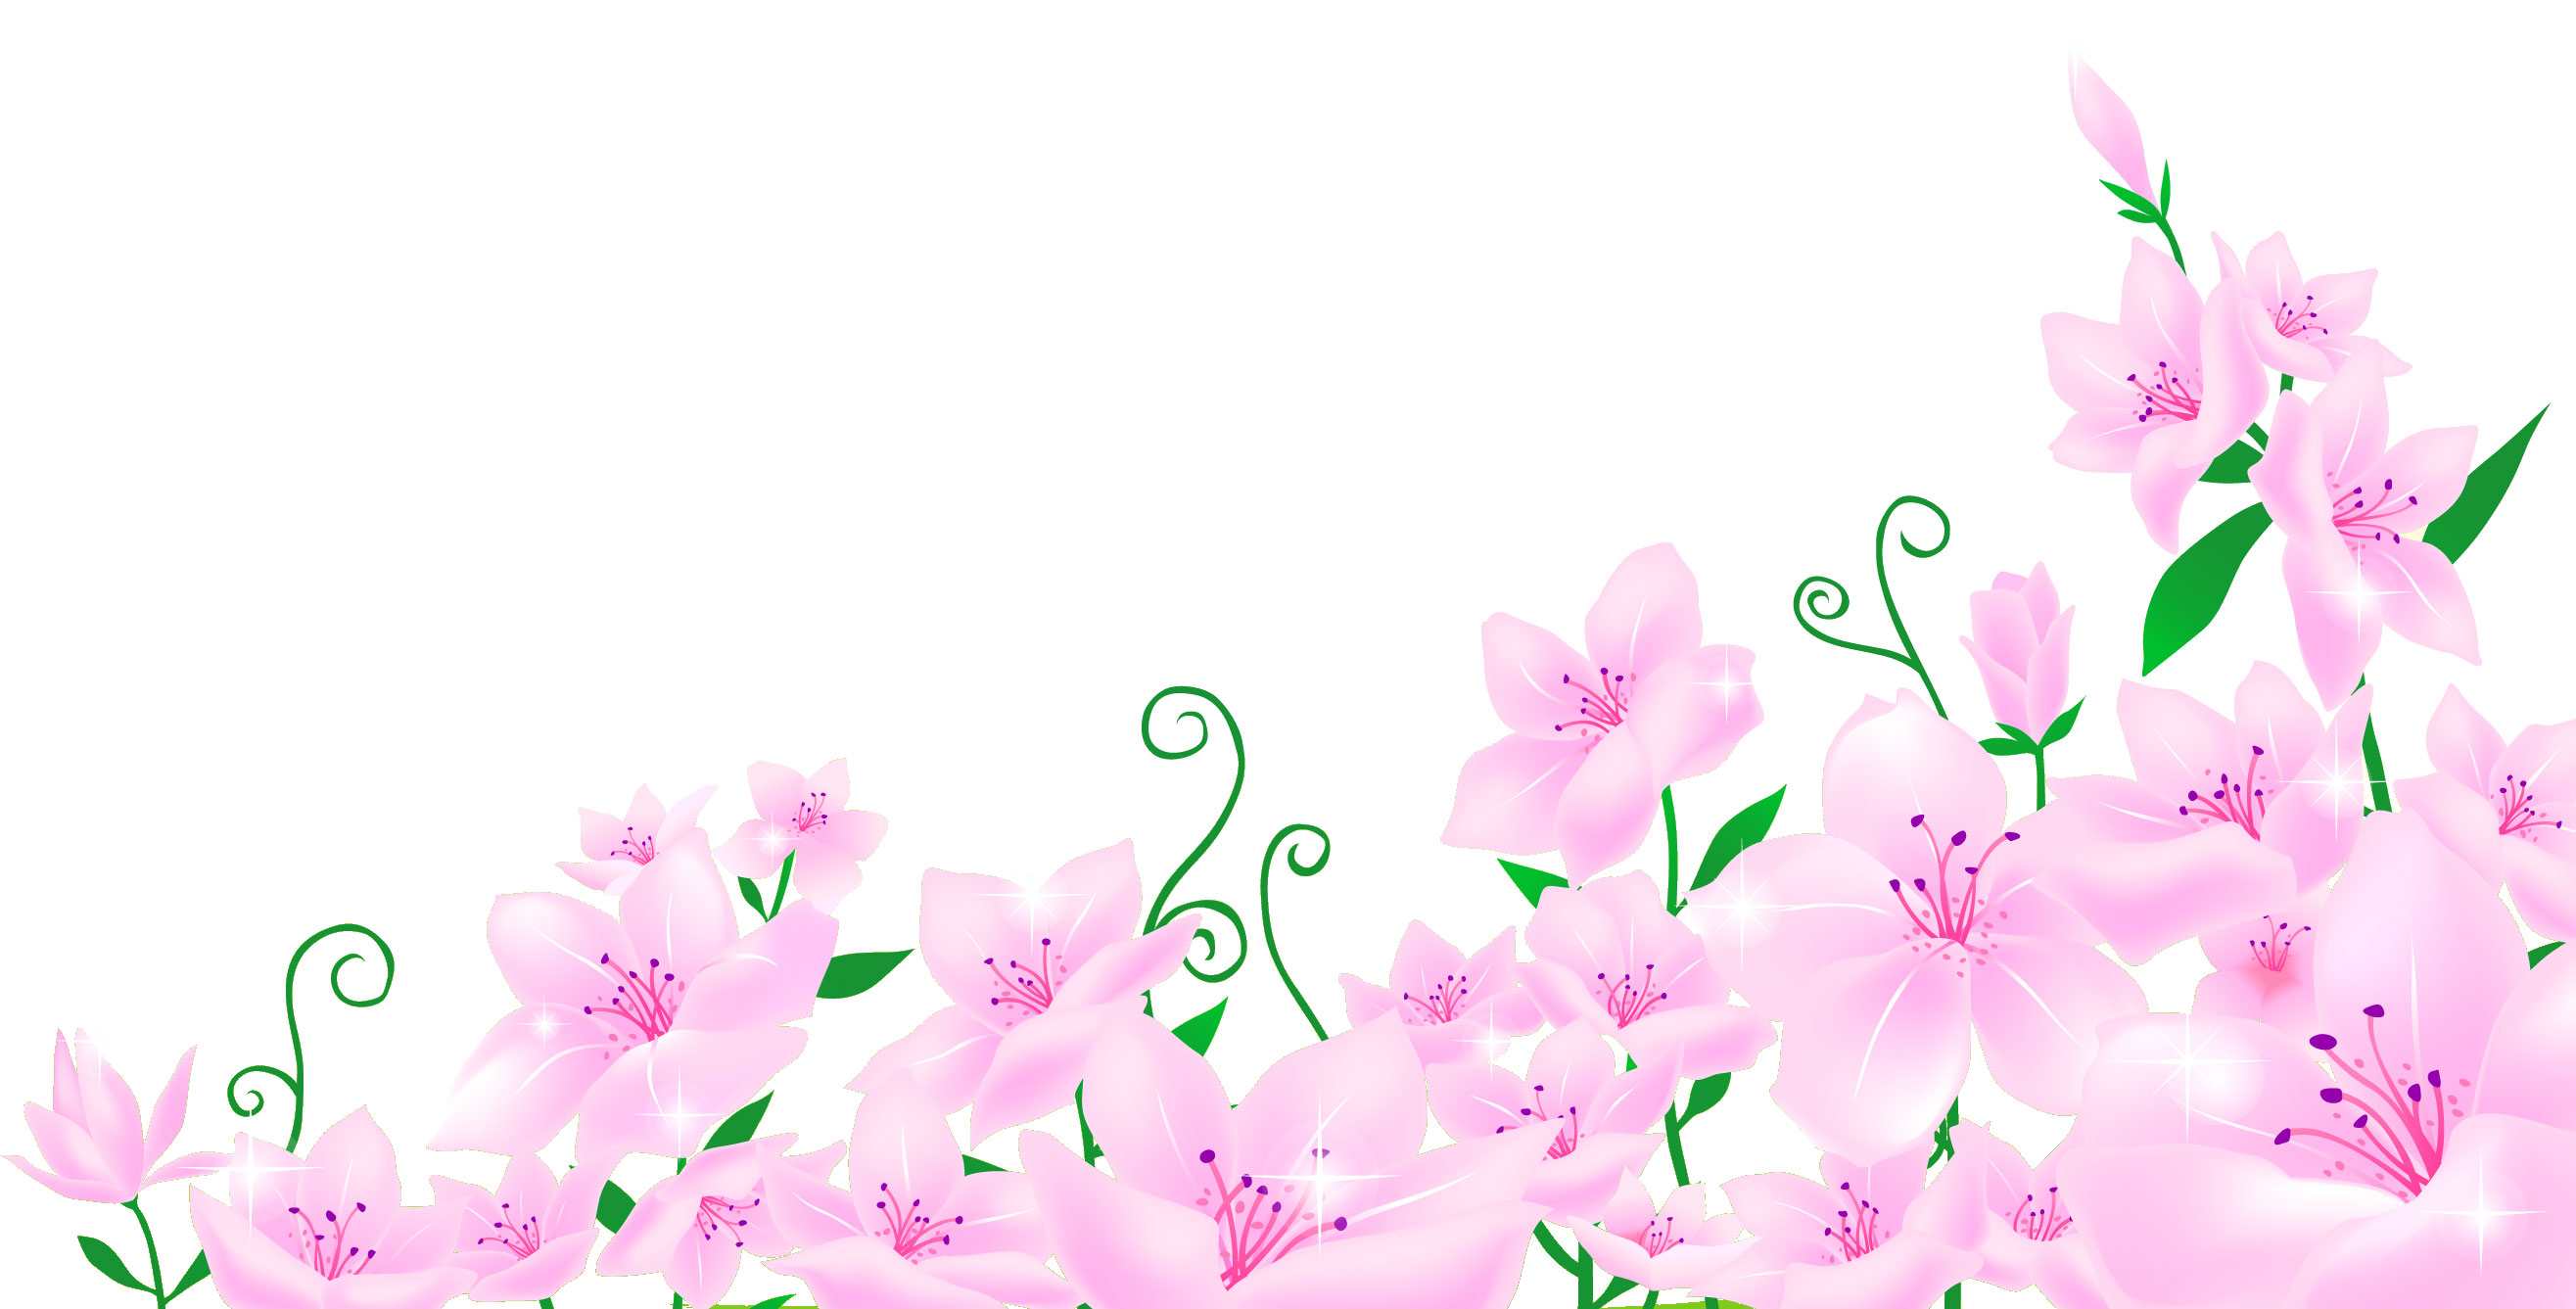 百合 ゆり の花の画像 イラスト フリー素材 No 170 ピンク たくさん 葉